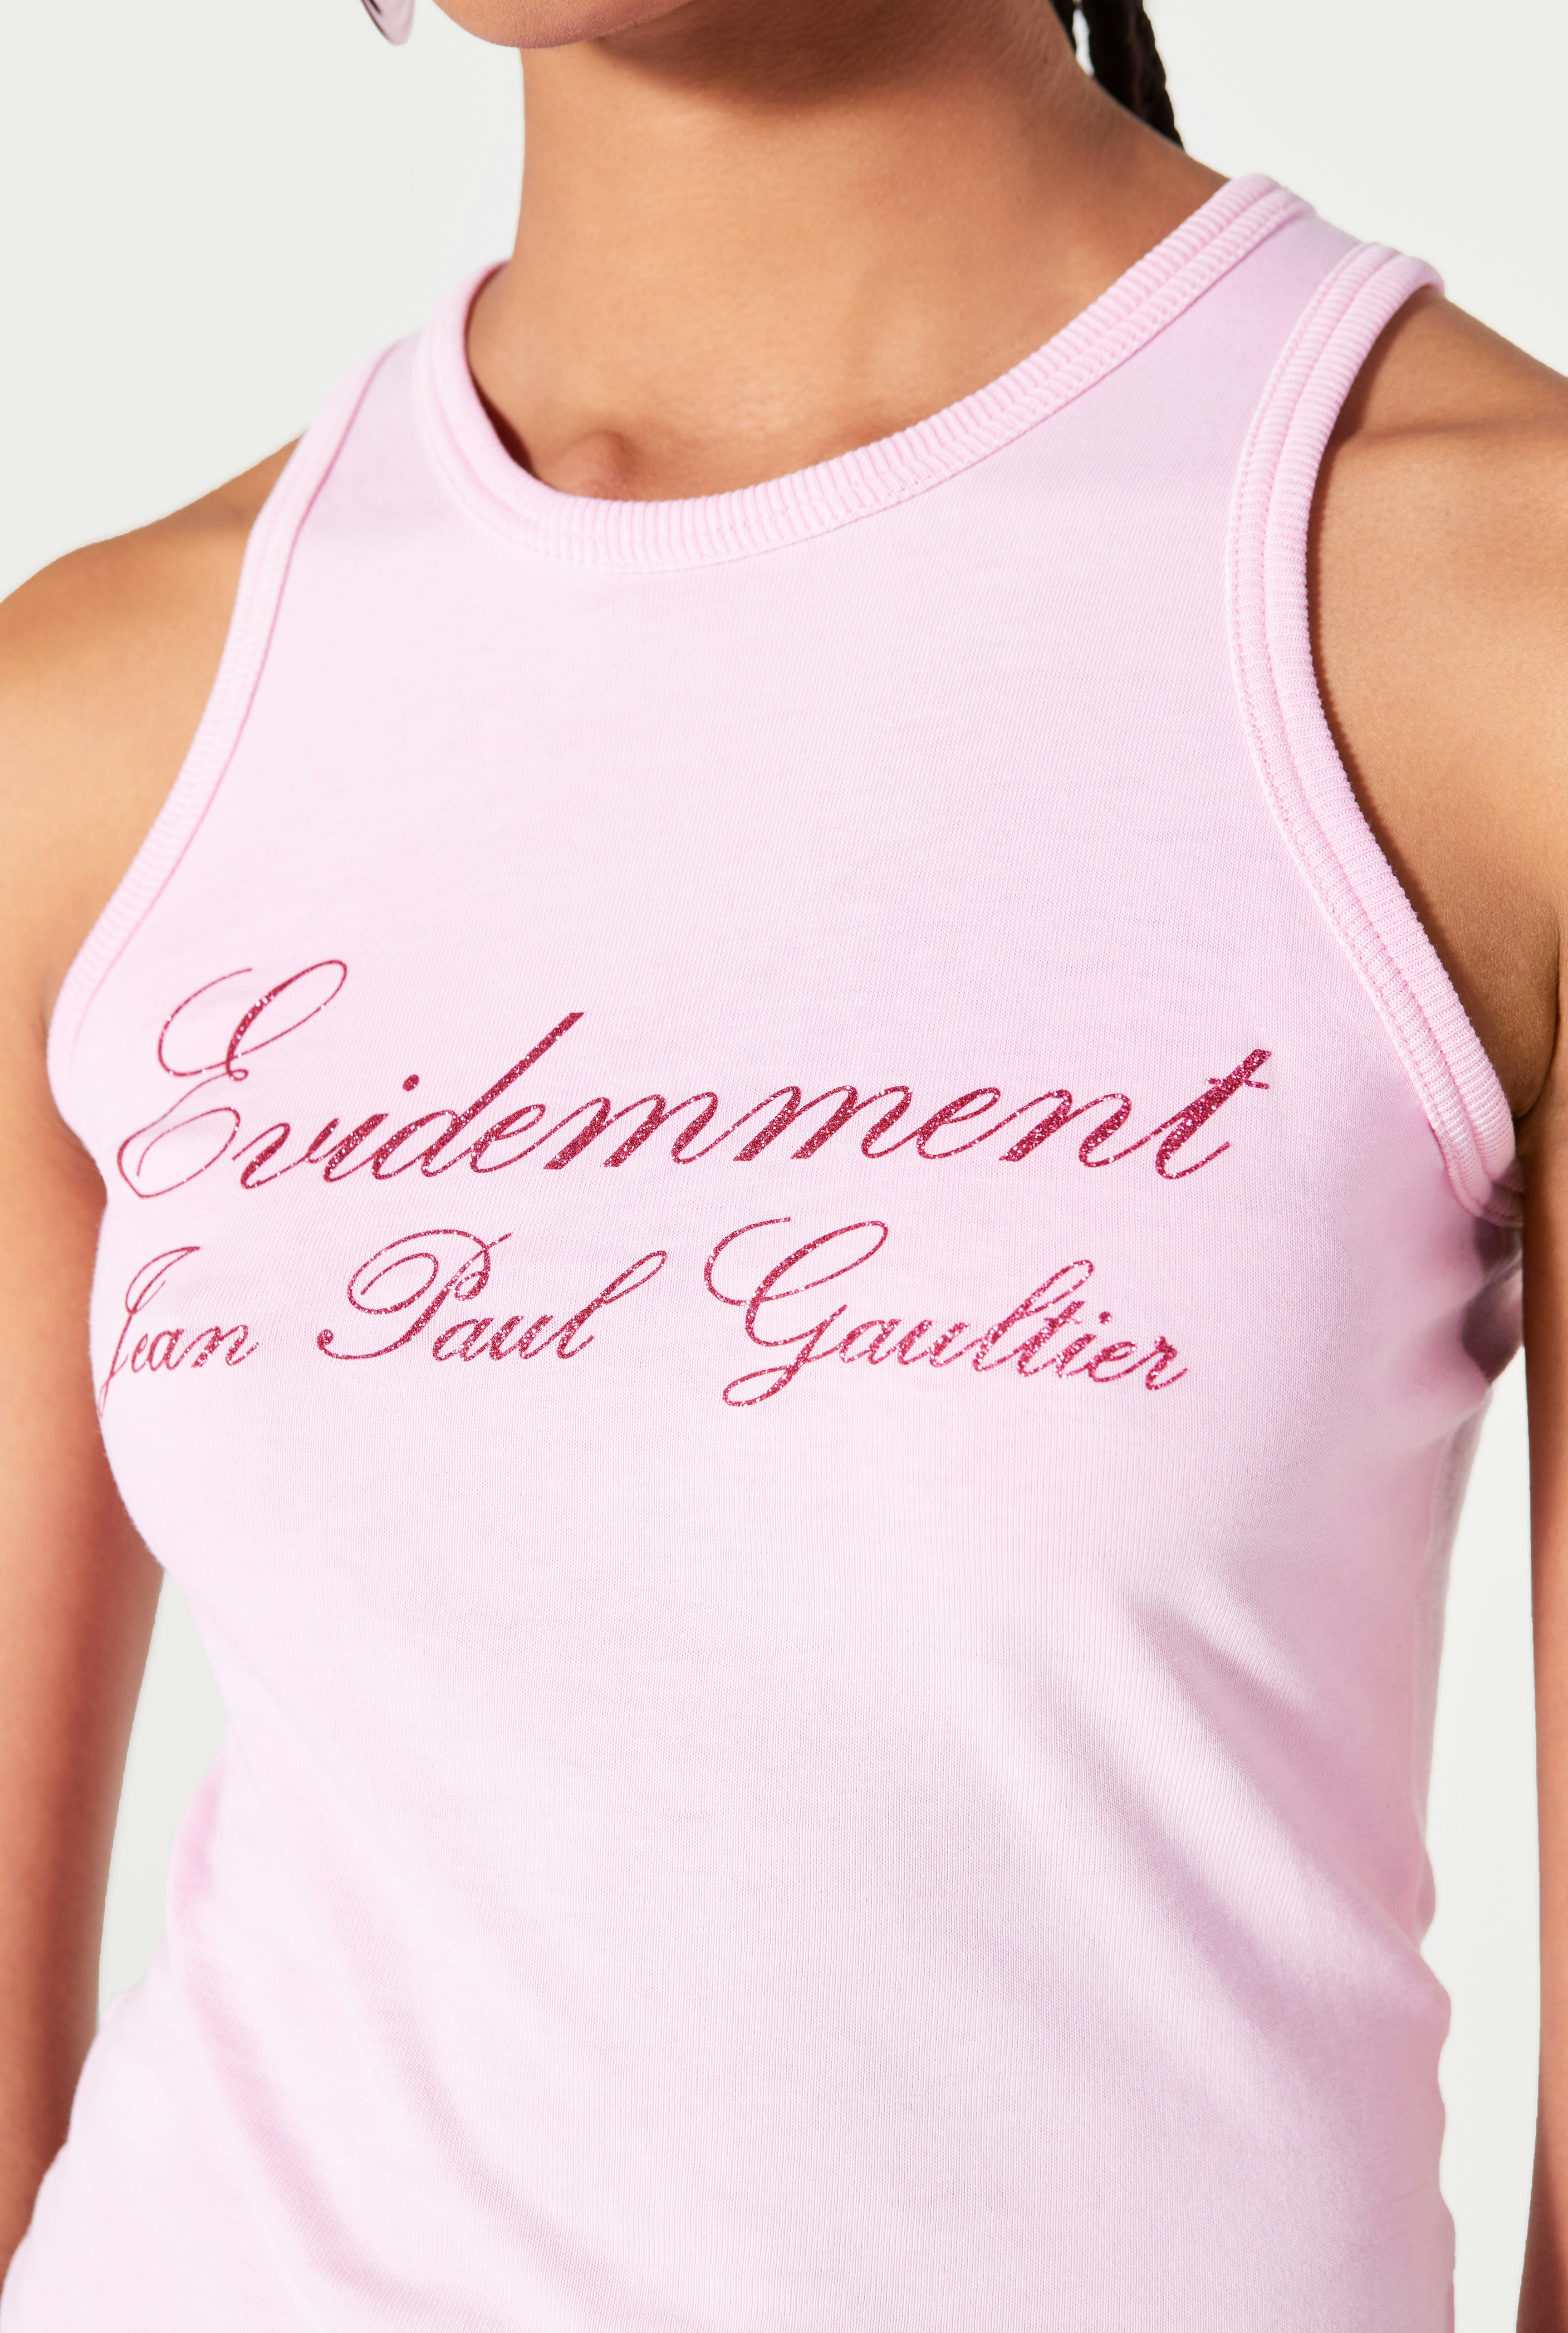 The Pink Évidemment Tank Top Jean Paul Gaultier